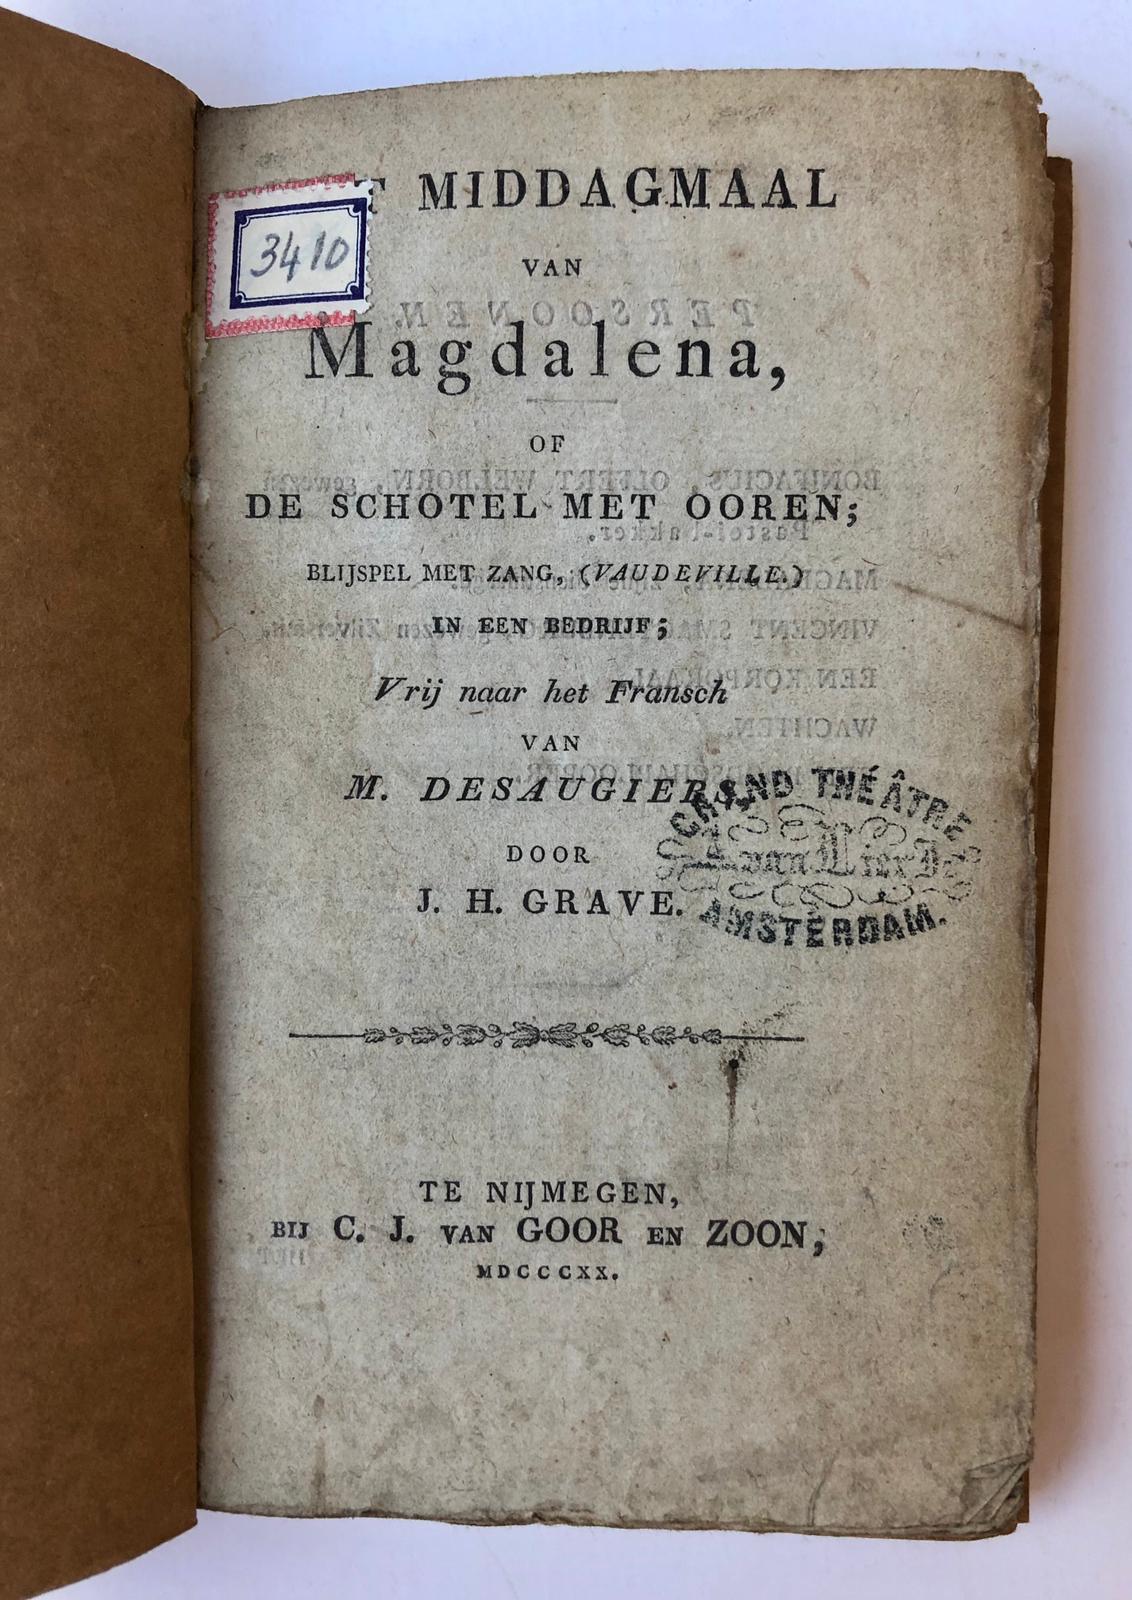 [Theater, The Hague] Het middagmaal van Magdalena, of De schotel met ooren; blijspel met zang (vaudeville) in een bedrijf. Vertaald uit het Frans. Nijmegen, C.J. van Goor en zoon, 1820.